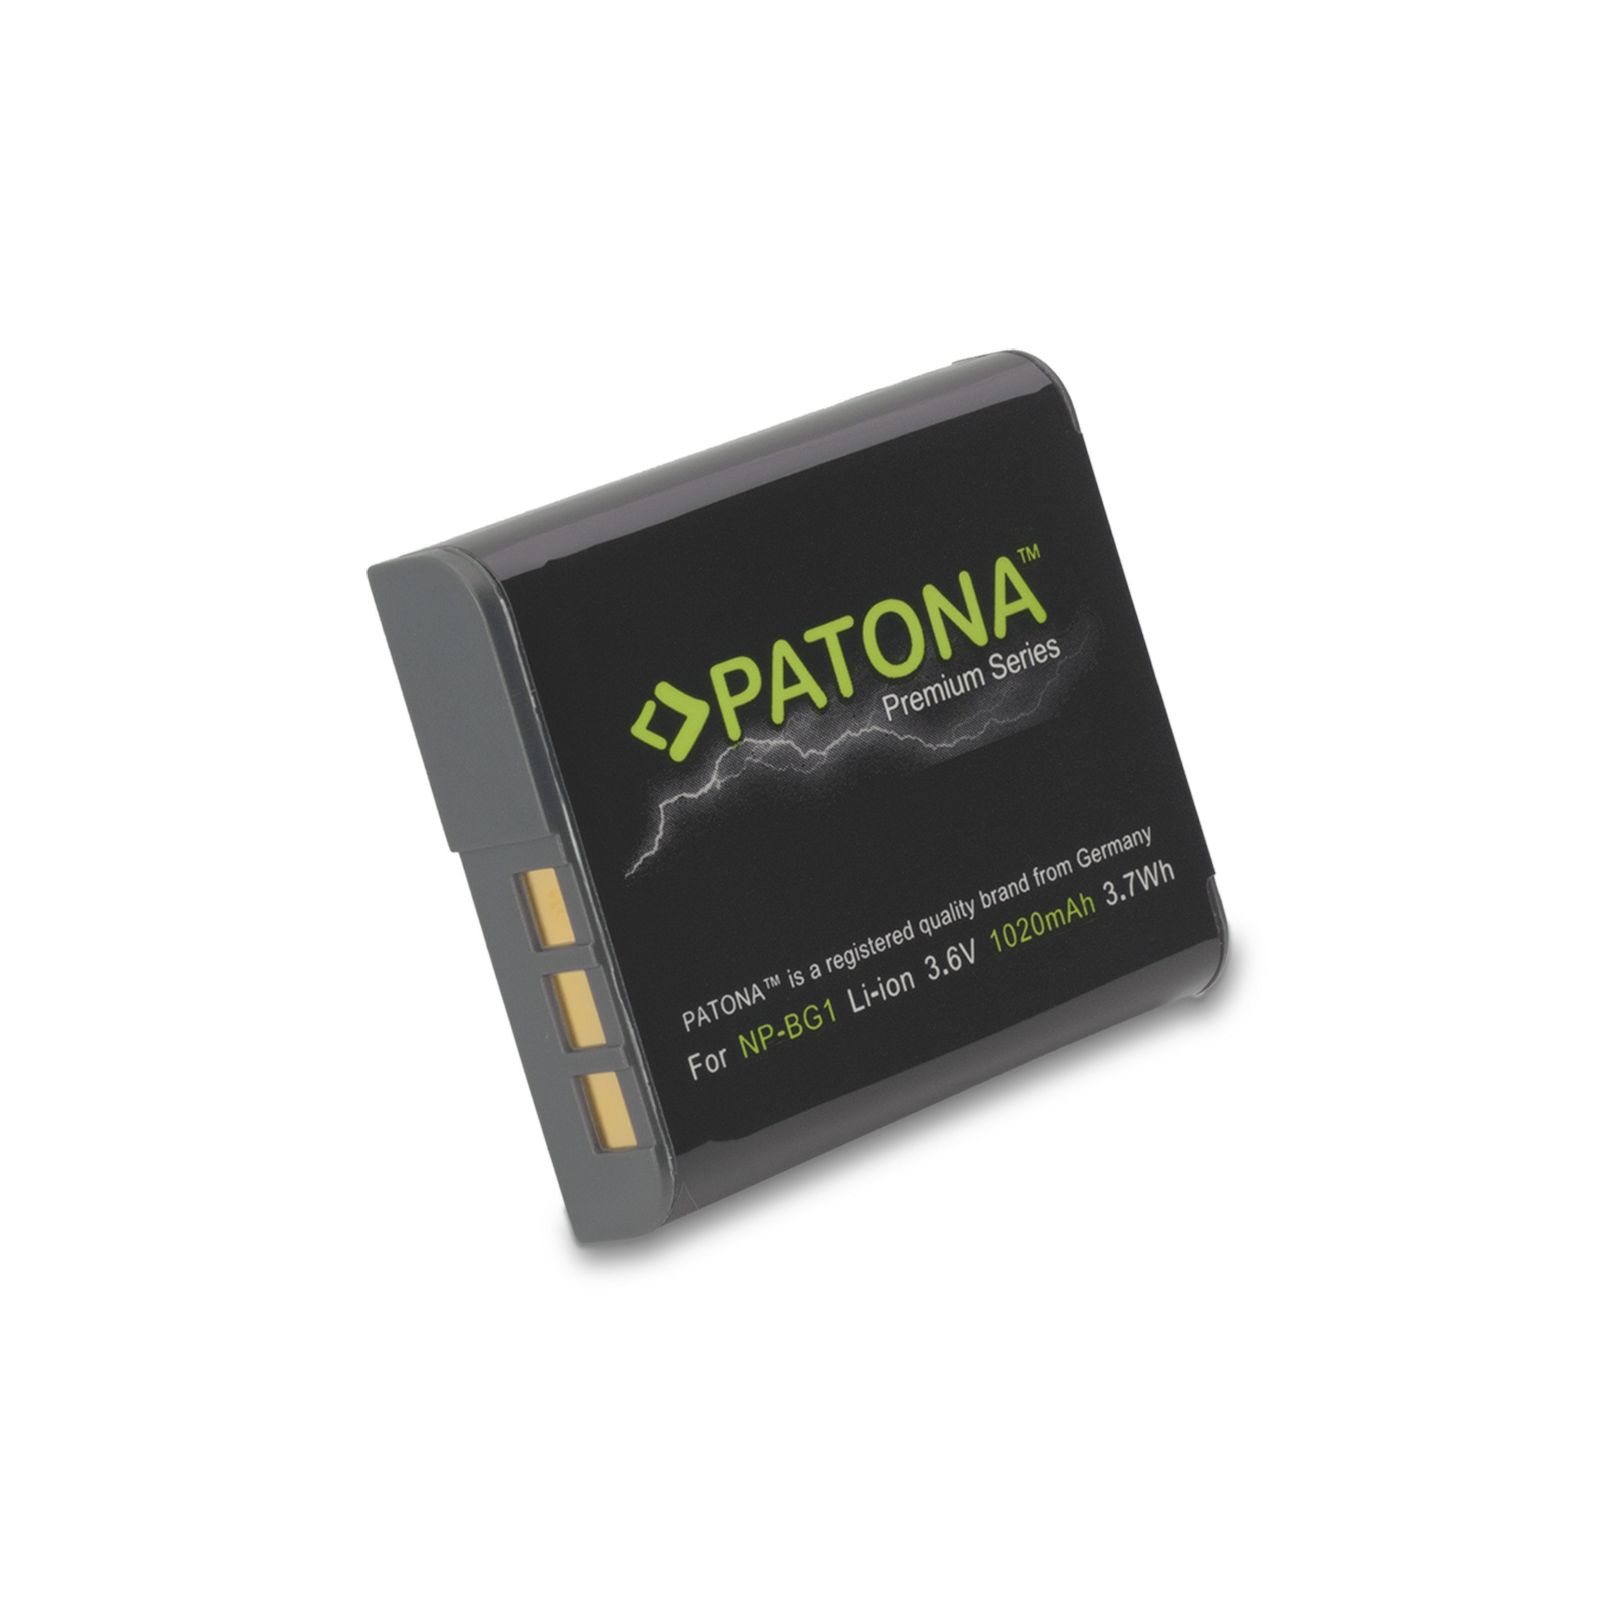 Patona Premium baterija za Sony NP-BG1 CyberShot DSC H55 DSC H70 DSC H90 DSC HX10V, DSC HX20V, DSC HX5V, DSC HX7V, DSC HX9V, DSC WX1, DSC WX10 1020mah 3.7Wh 3.6V